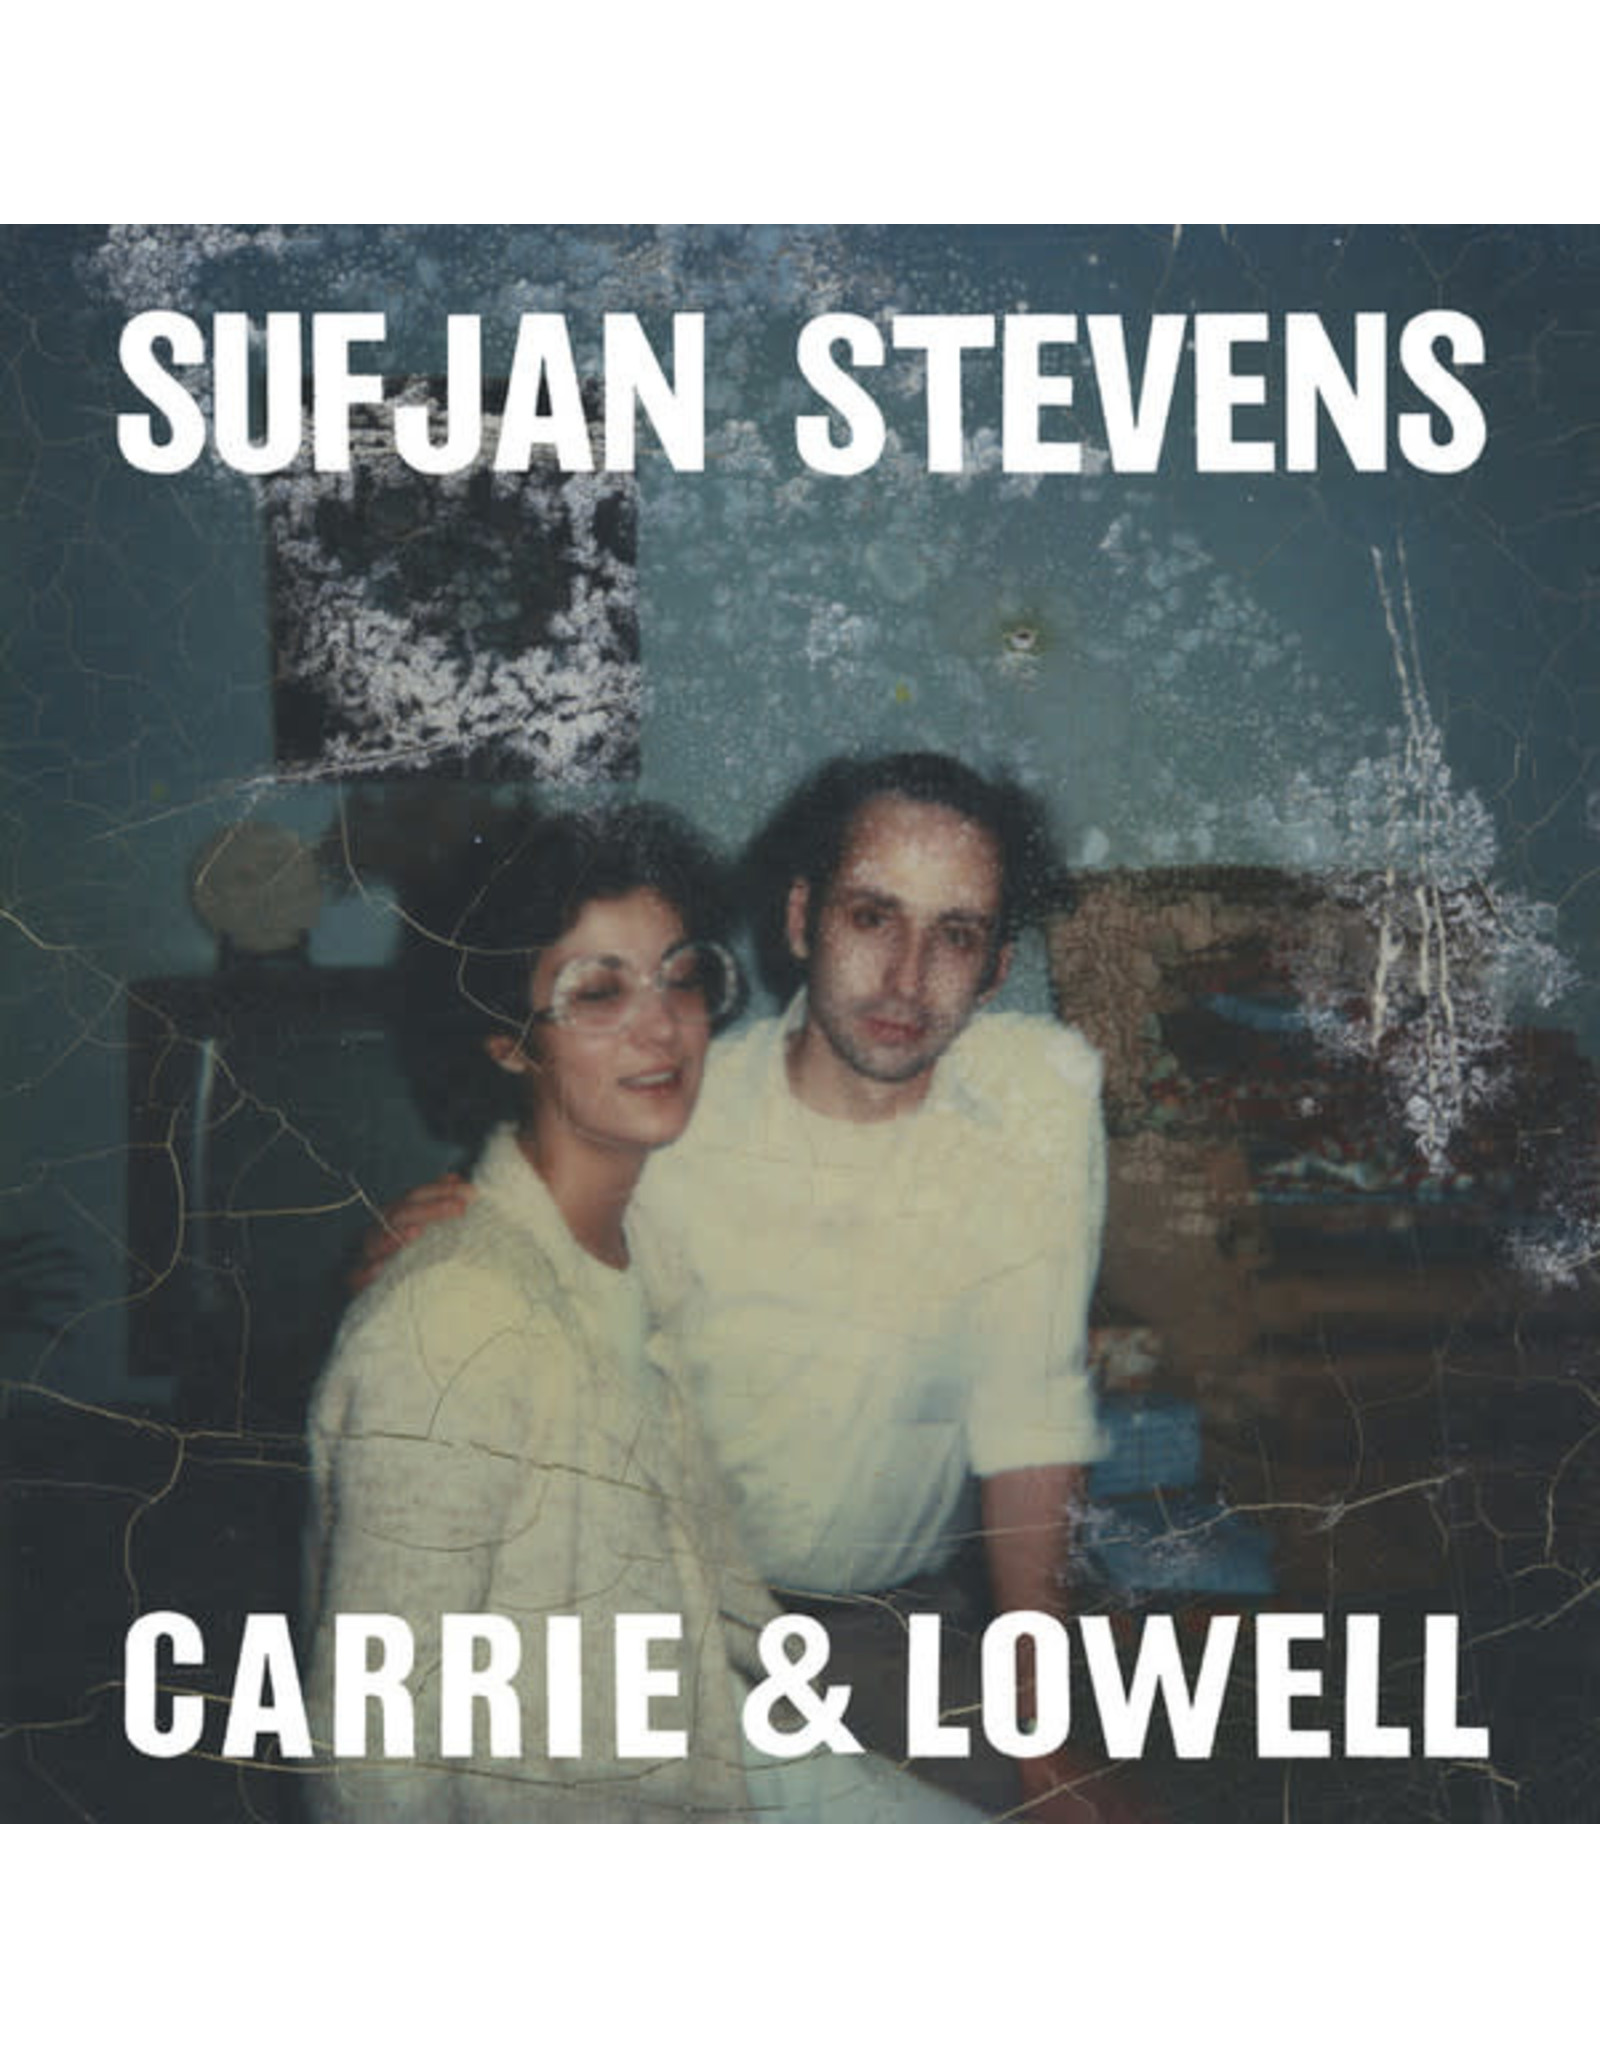 New Vinyl Sufjan Stevens - Carrie & Lowell LP